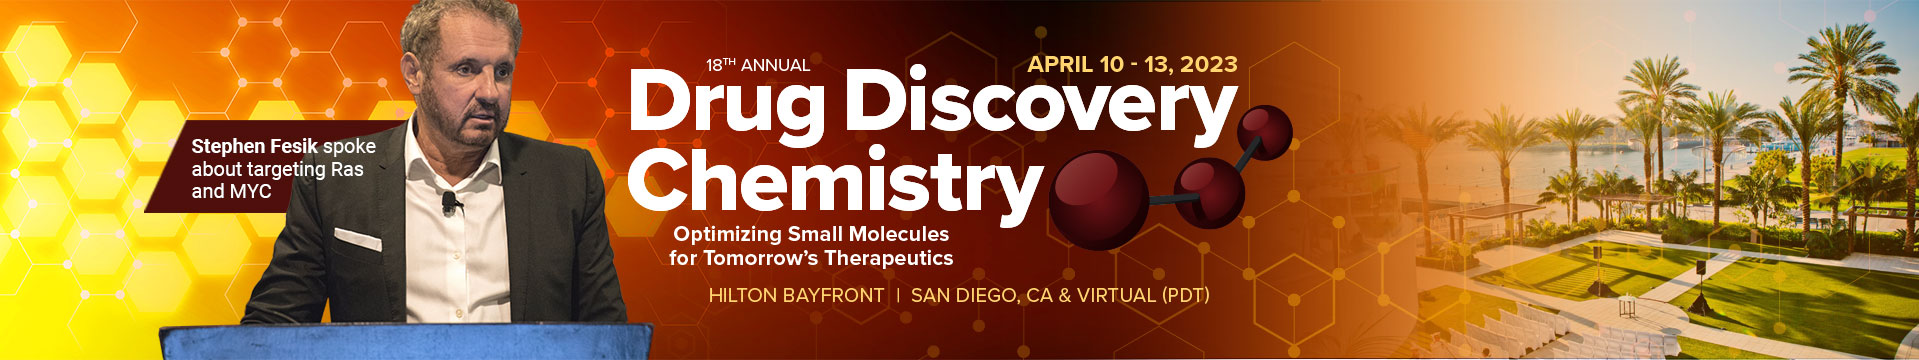 Drug Discovery Chemistry - 2023